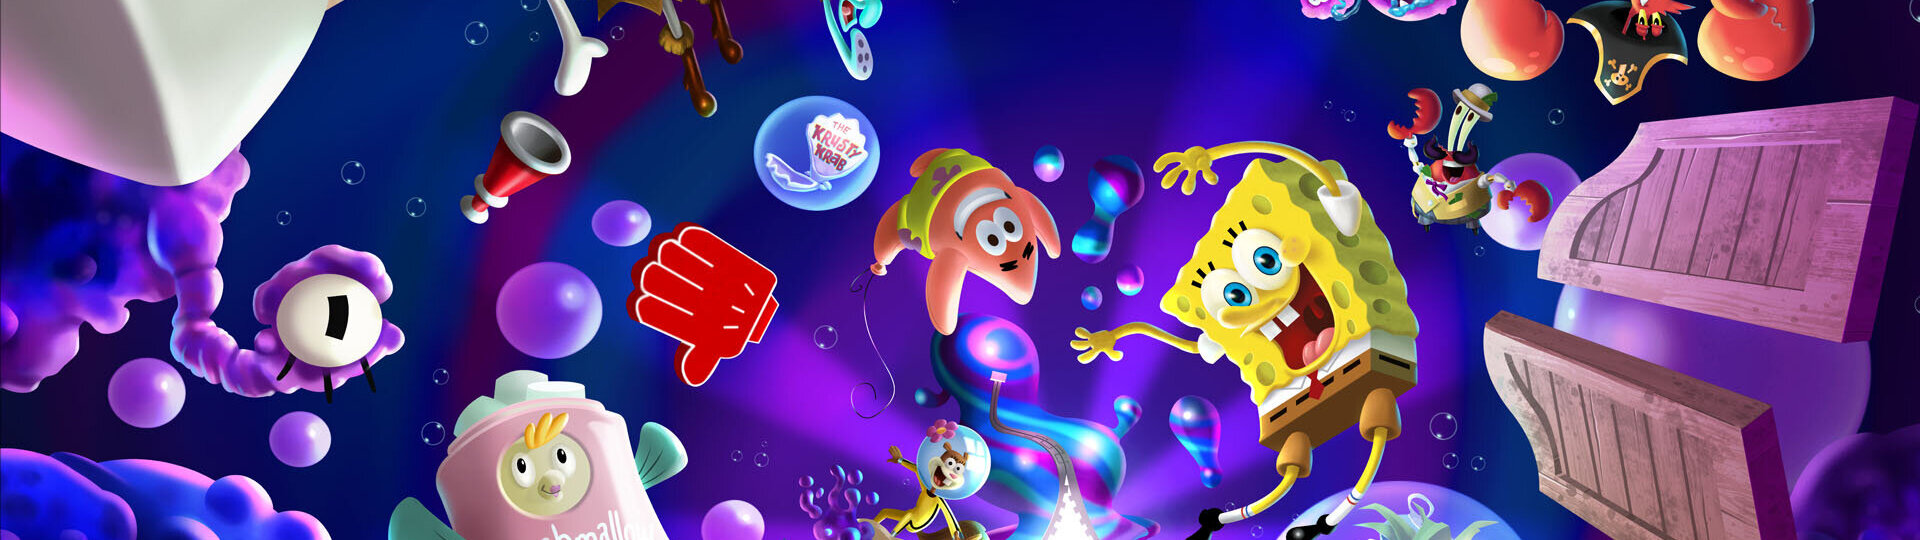 Na konci měsíce vyrazí SpongeBob do nových dimenzí | Videa